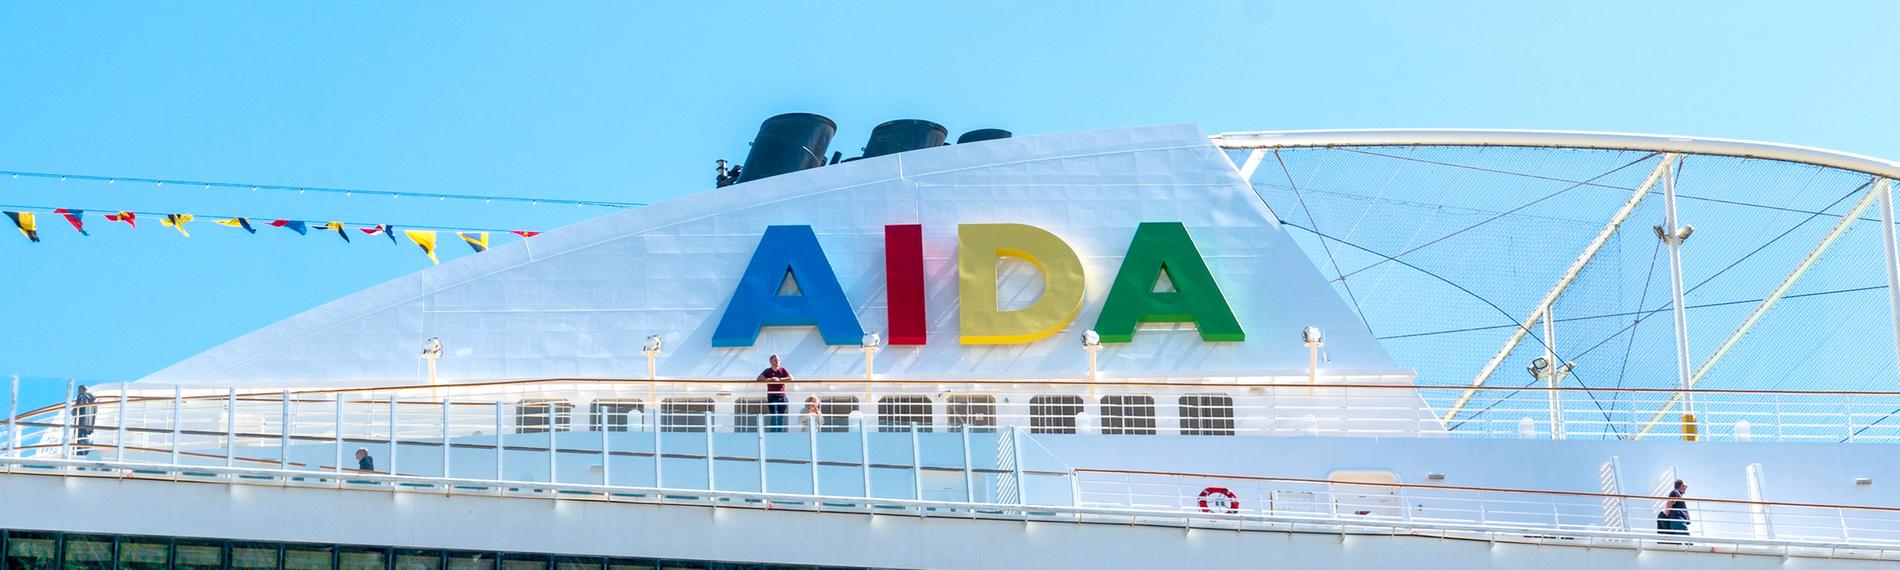 Das "AIDA"-Logo ist auf einem Schiffsdach vor blauem Himmel zu sehen.